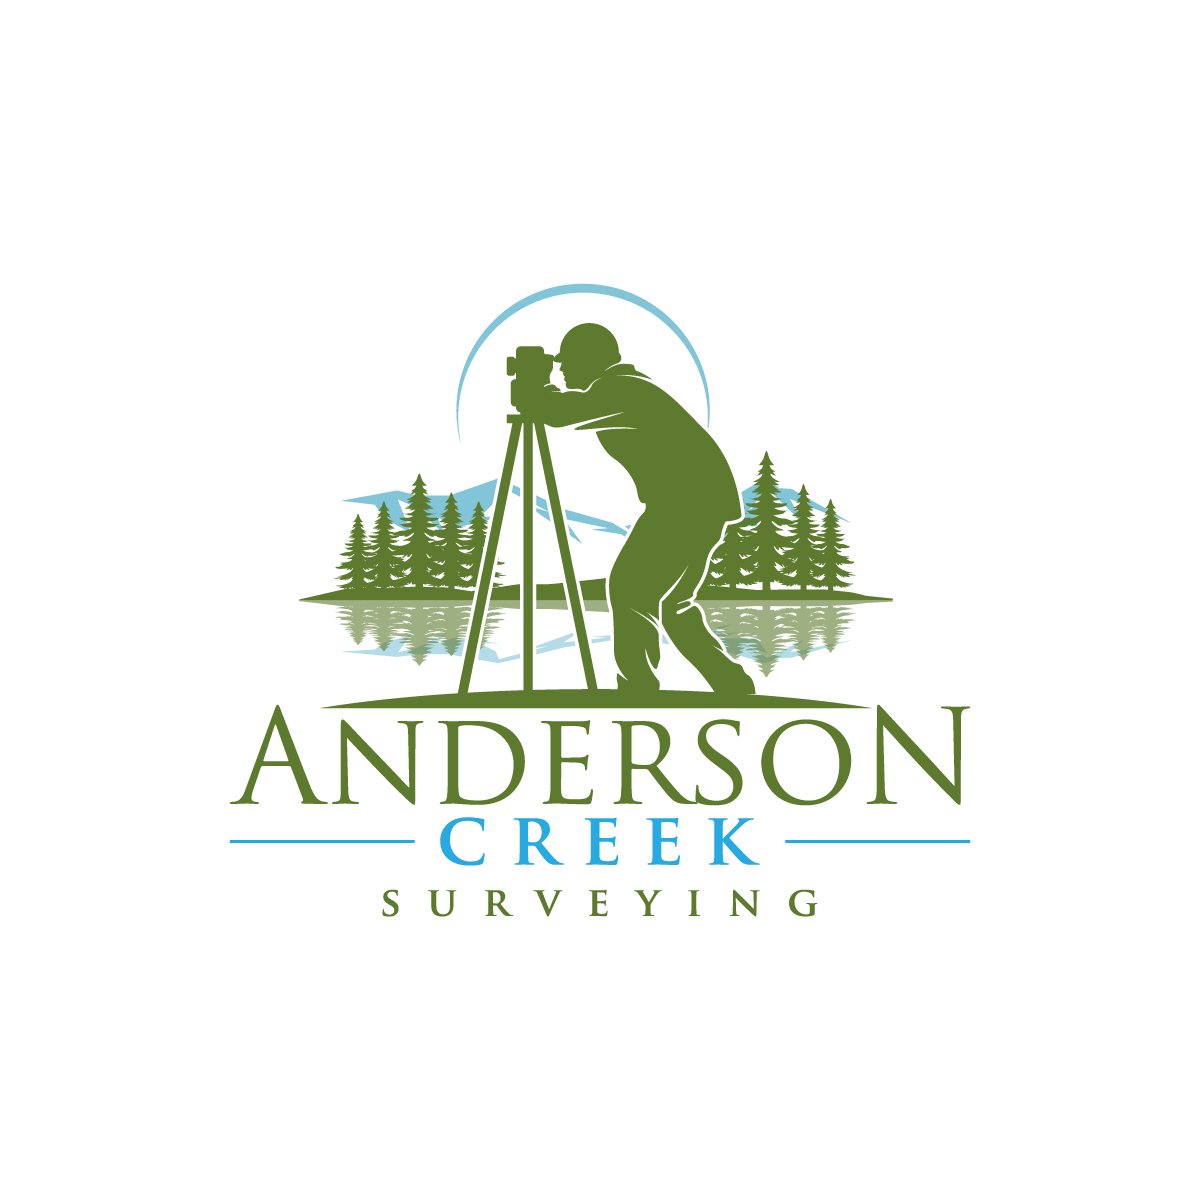 Anderson Creek Surveying